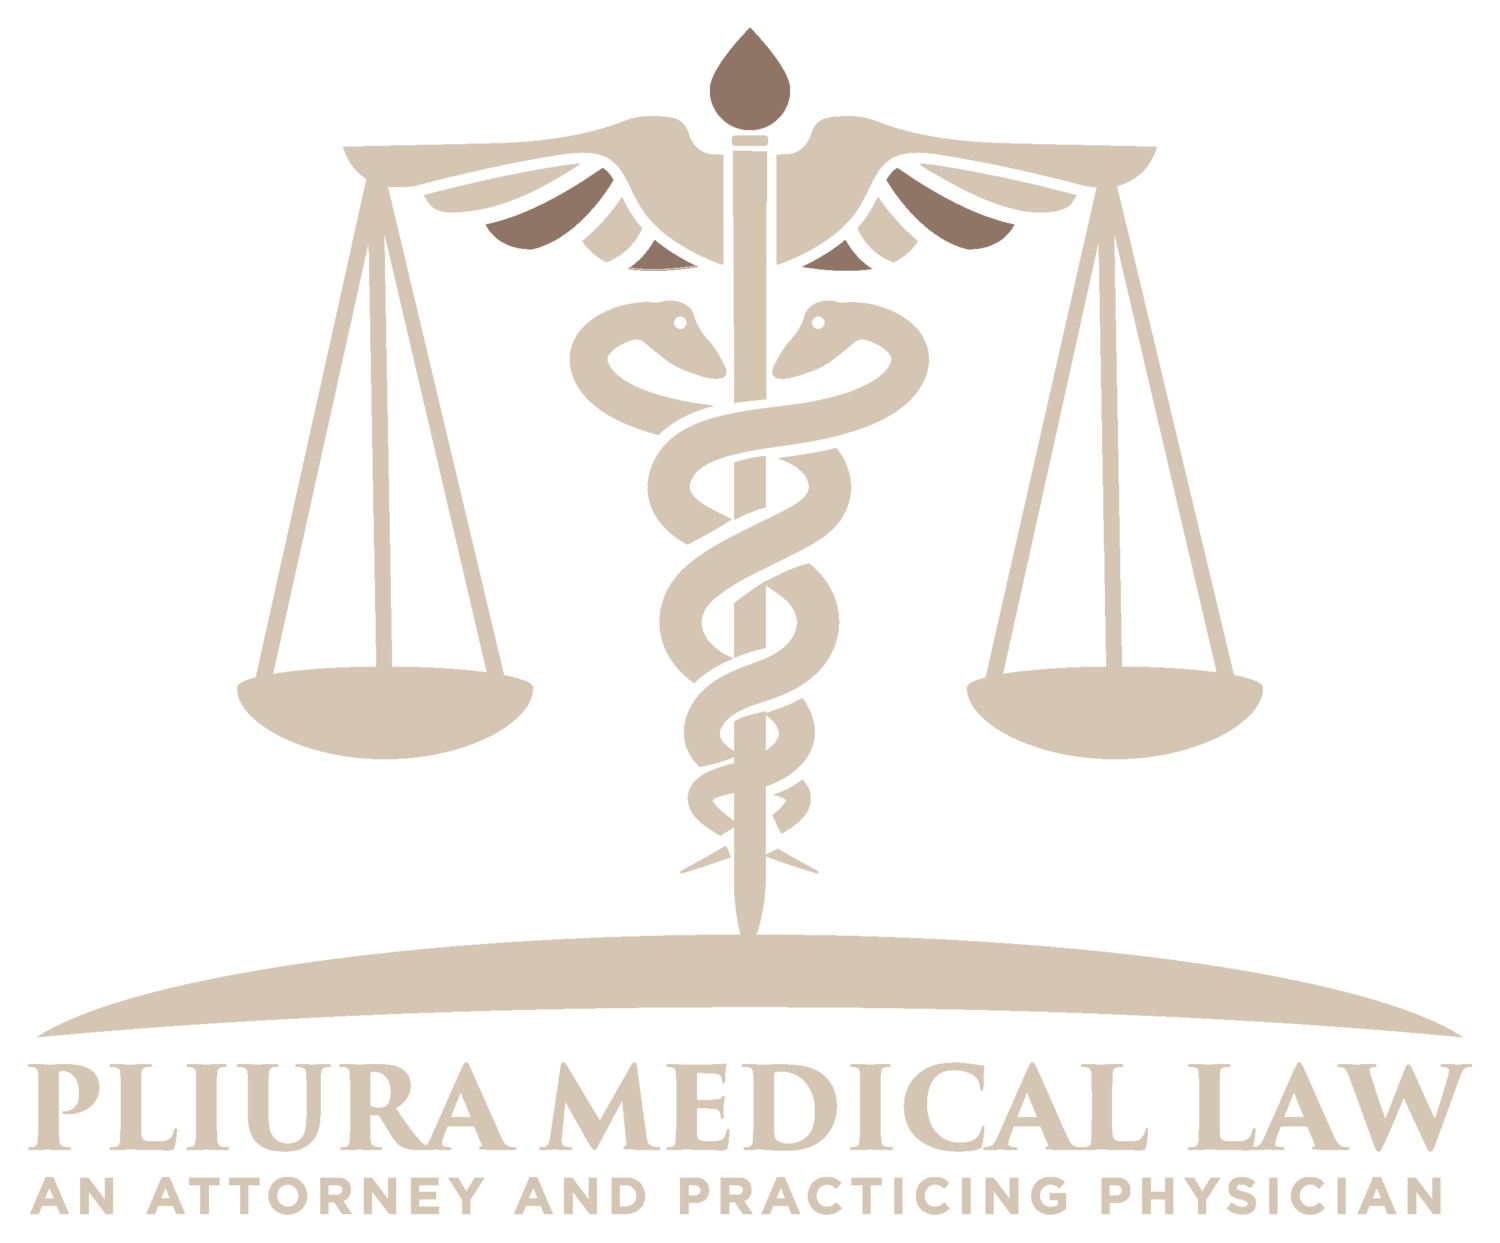 Pliura Medical Law